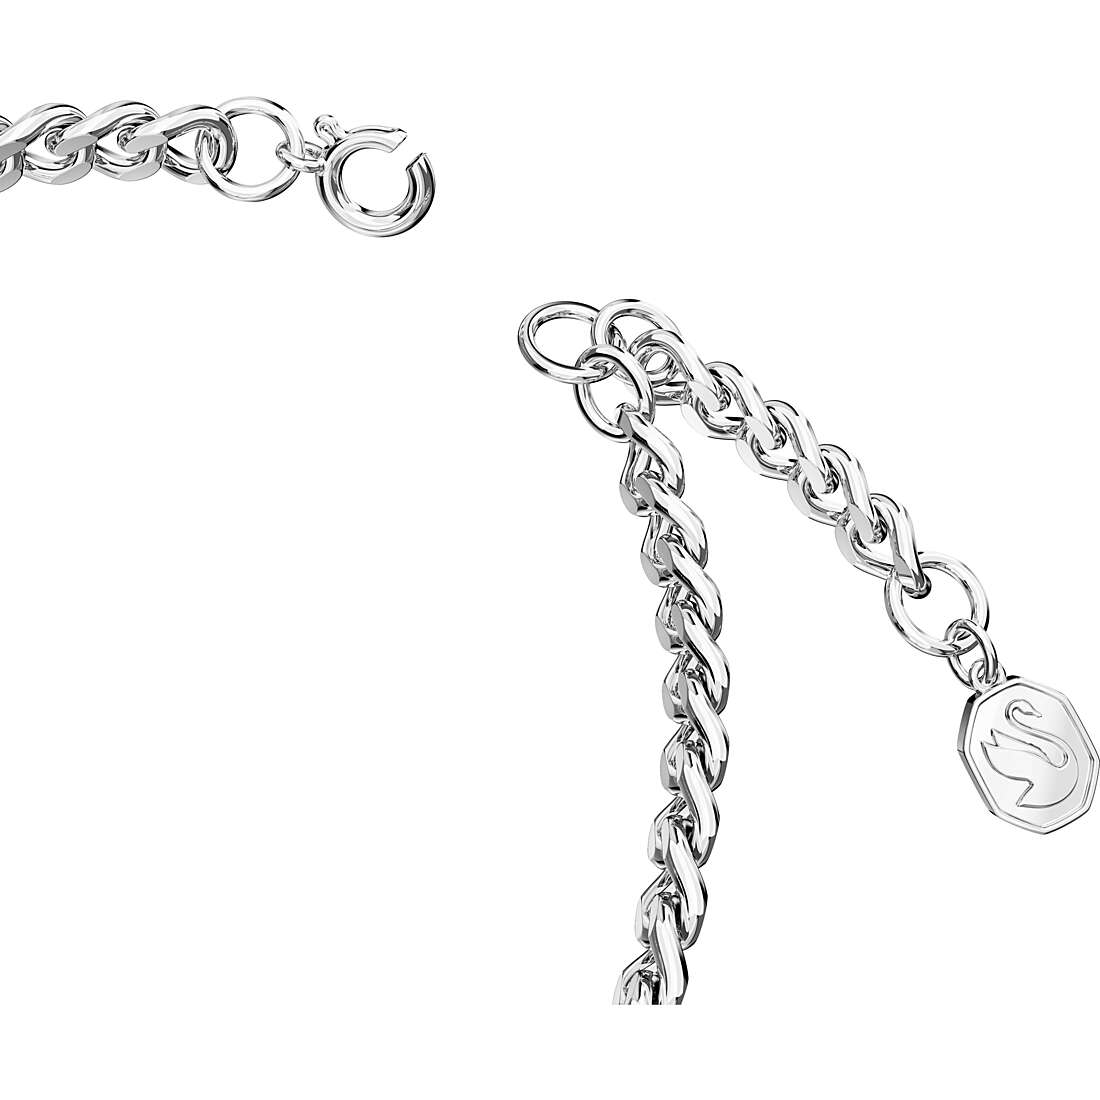 Swarovski bracelet man Bracelet with 925 Silver Charms/Beads jewel 5658330